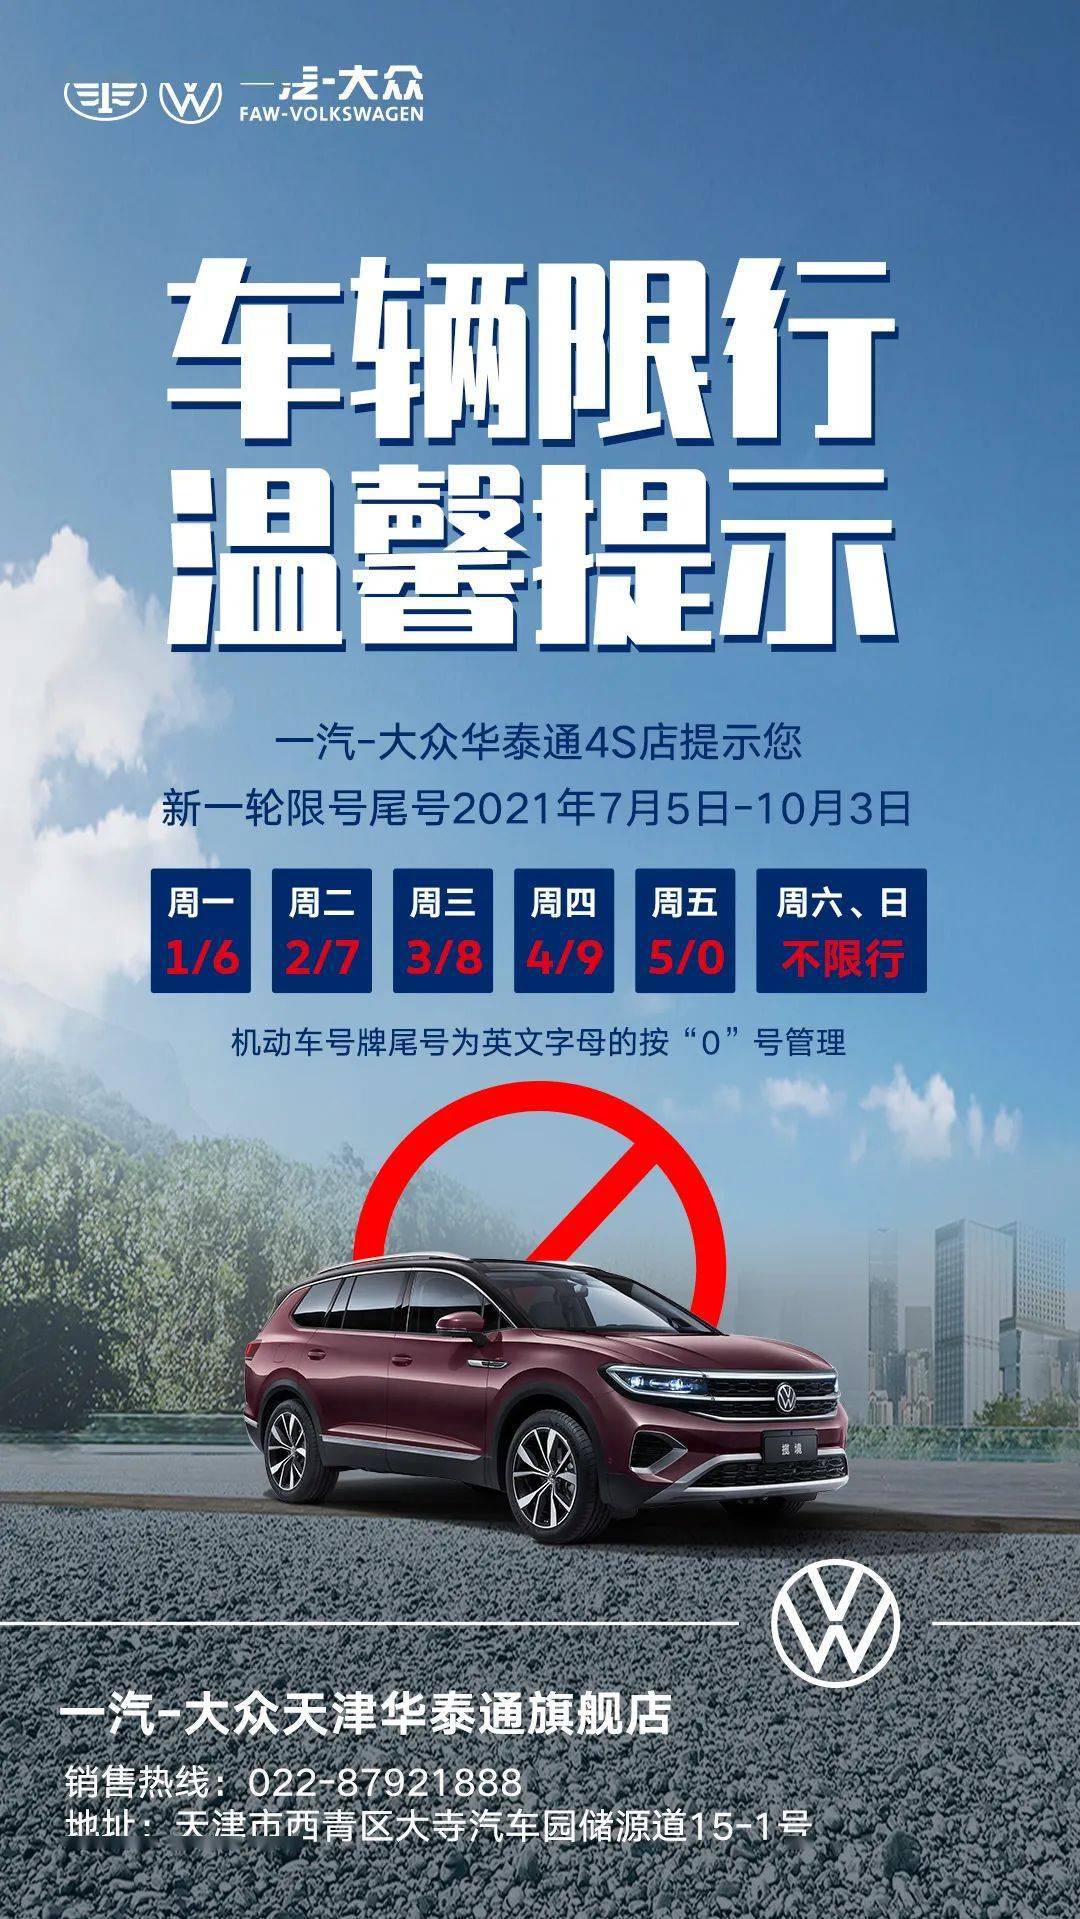 注意天津市新的一轮机动车限号明日开始实行